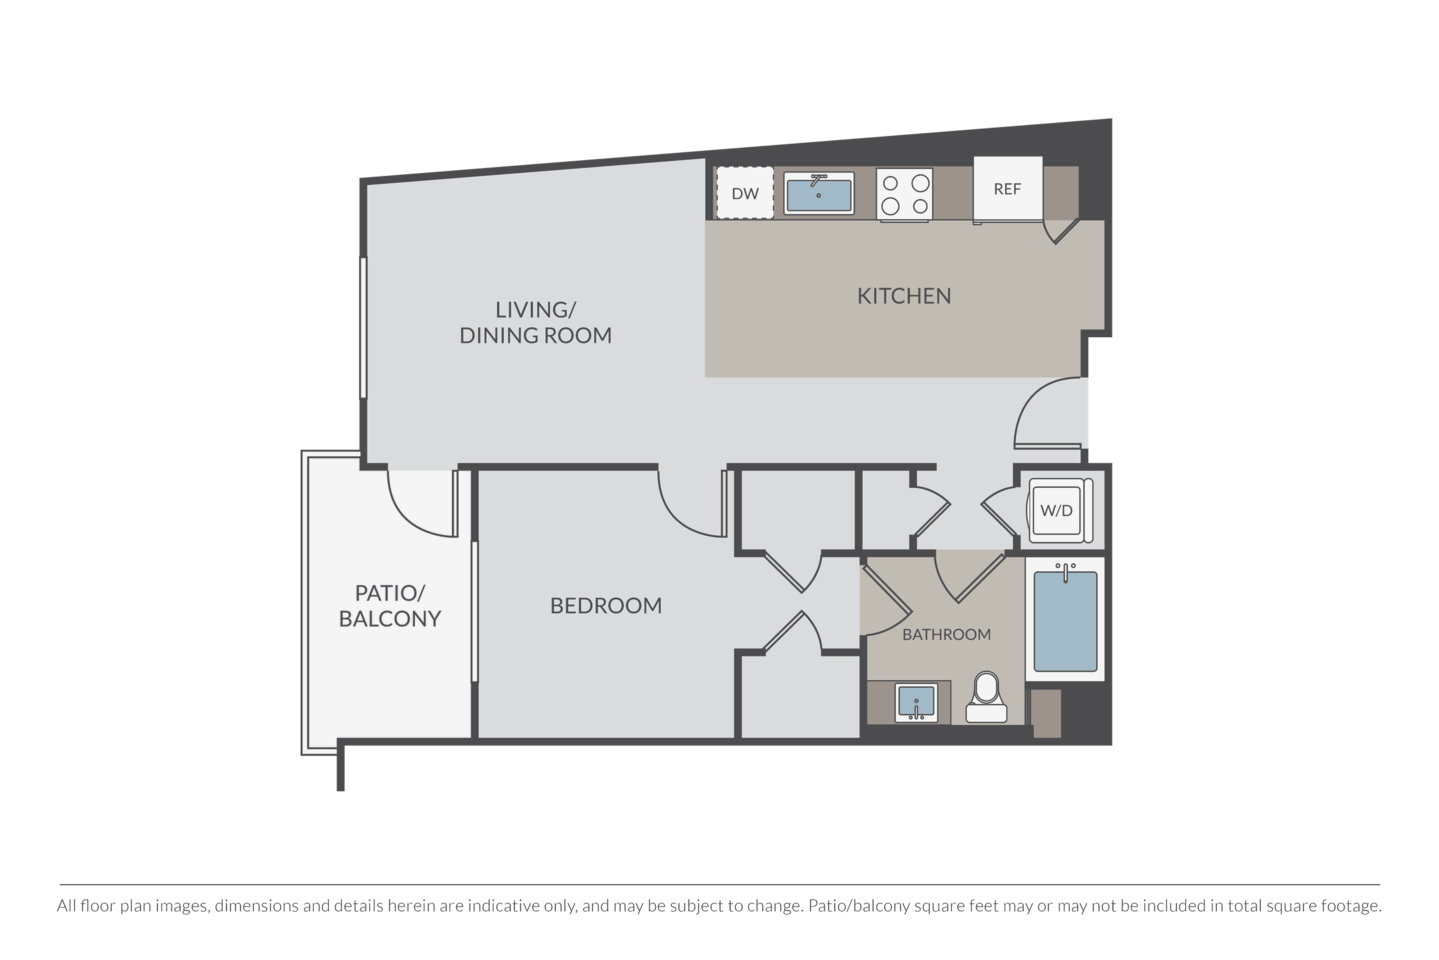 Floorplan diagram for Wilton, showing 1 bedroom